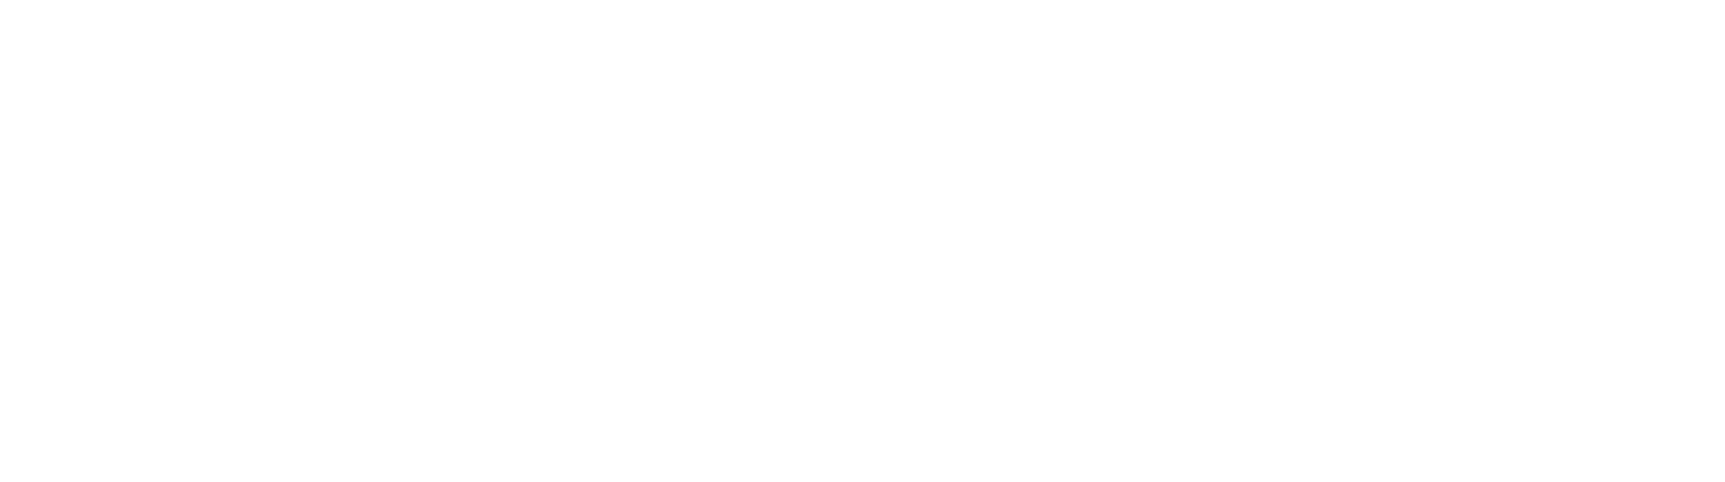 Virtual Cr8tive